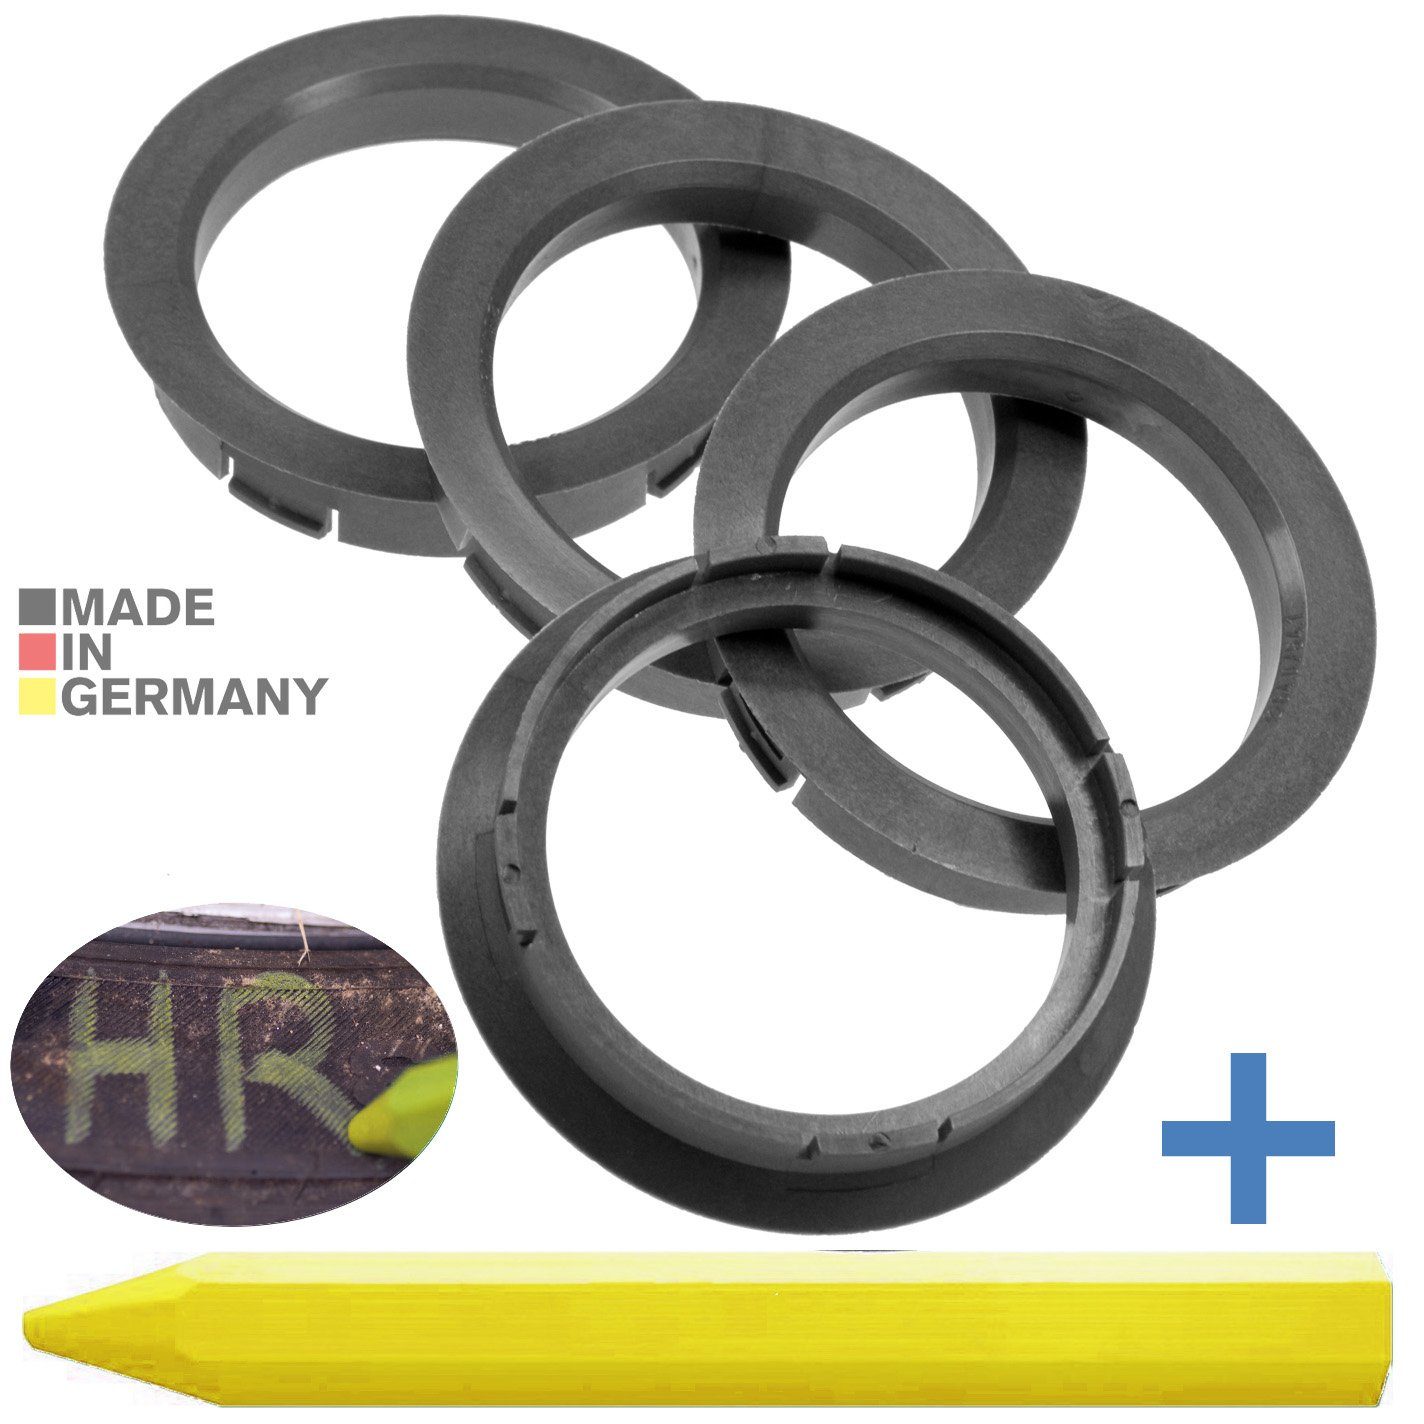 RKC Reifenstift 4X Zentrierringe Silber. Felgen Ringe + 1x Reifen Kreide Fett Stift, Maße: 64,0 x 54,1 mm